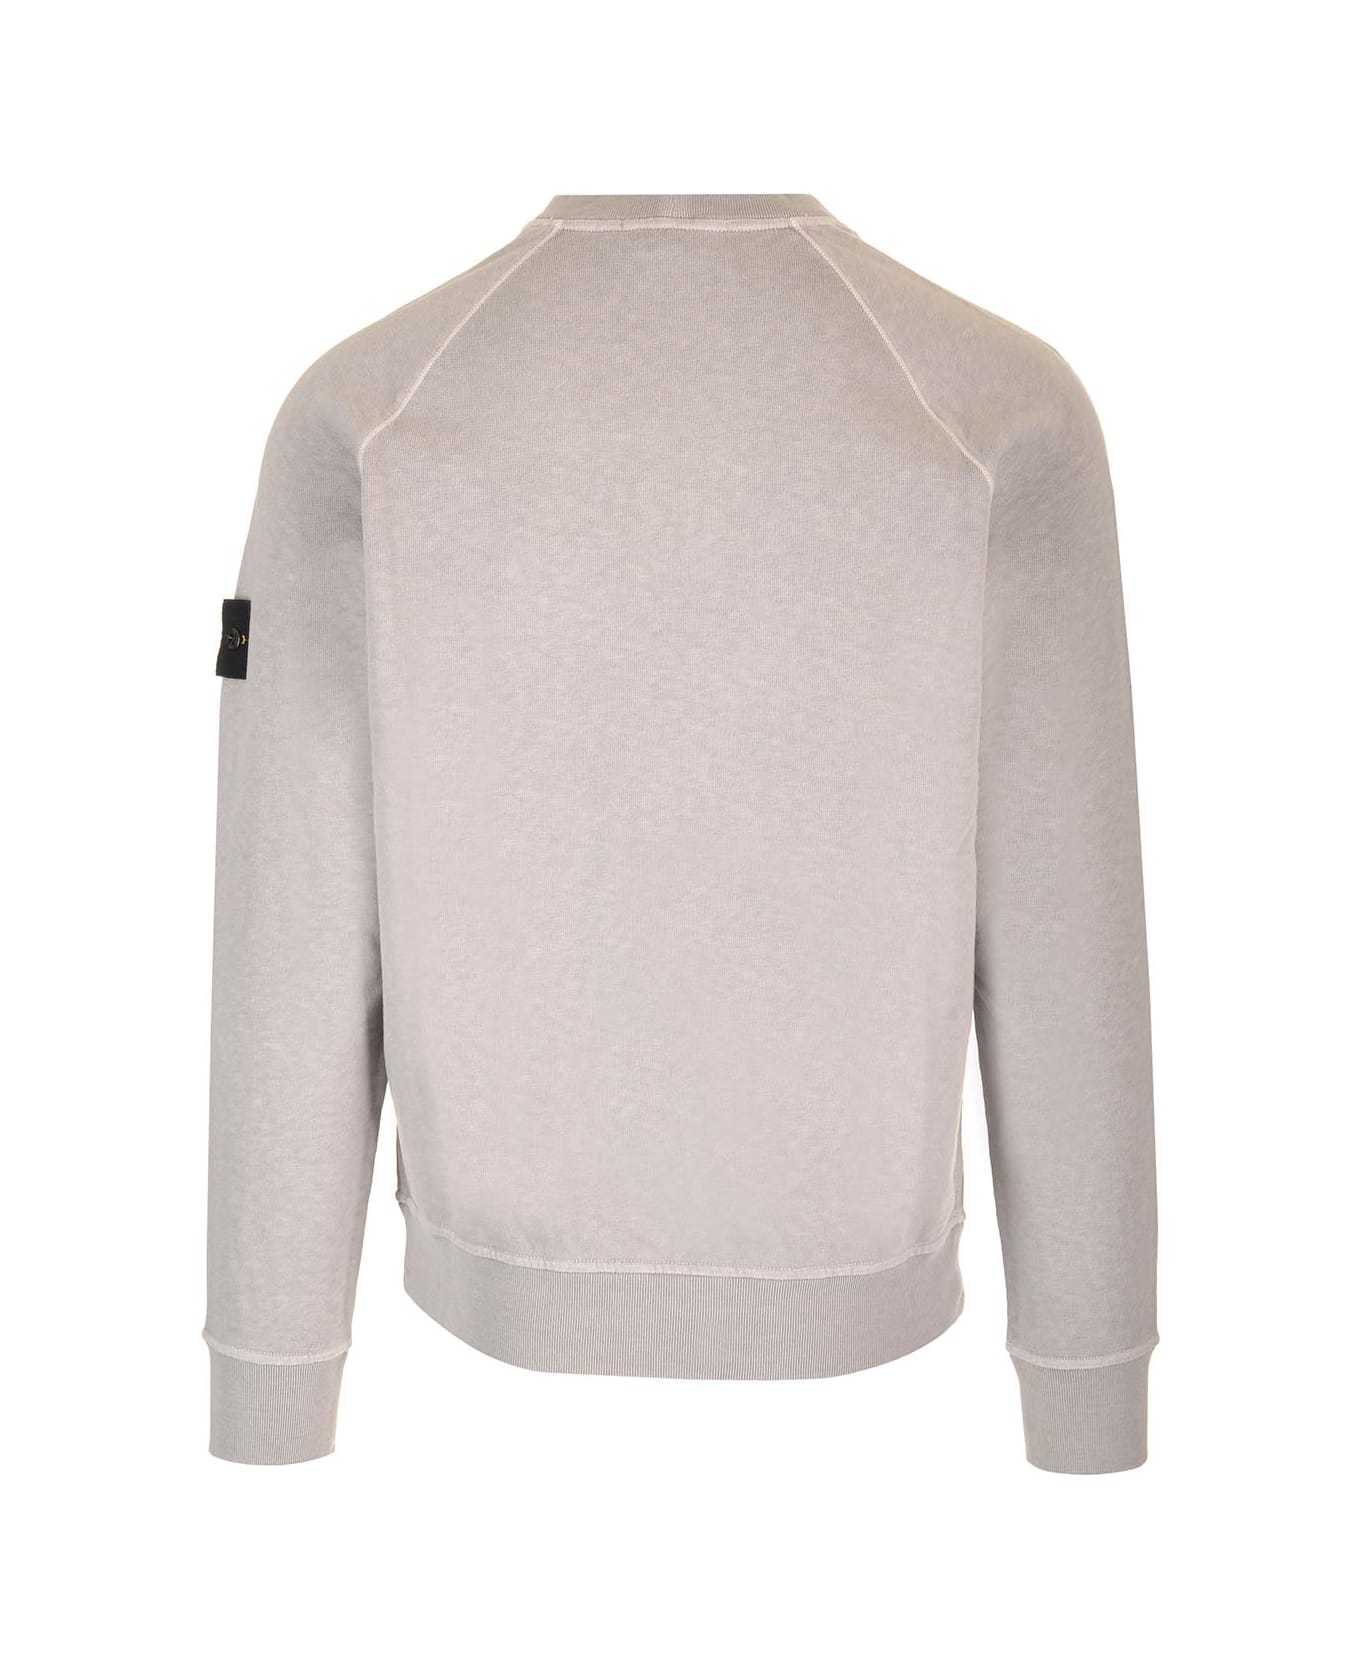 Stone Island Grey Sweatshirt With Mock Neck - Dust